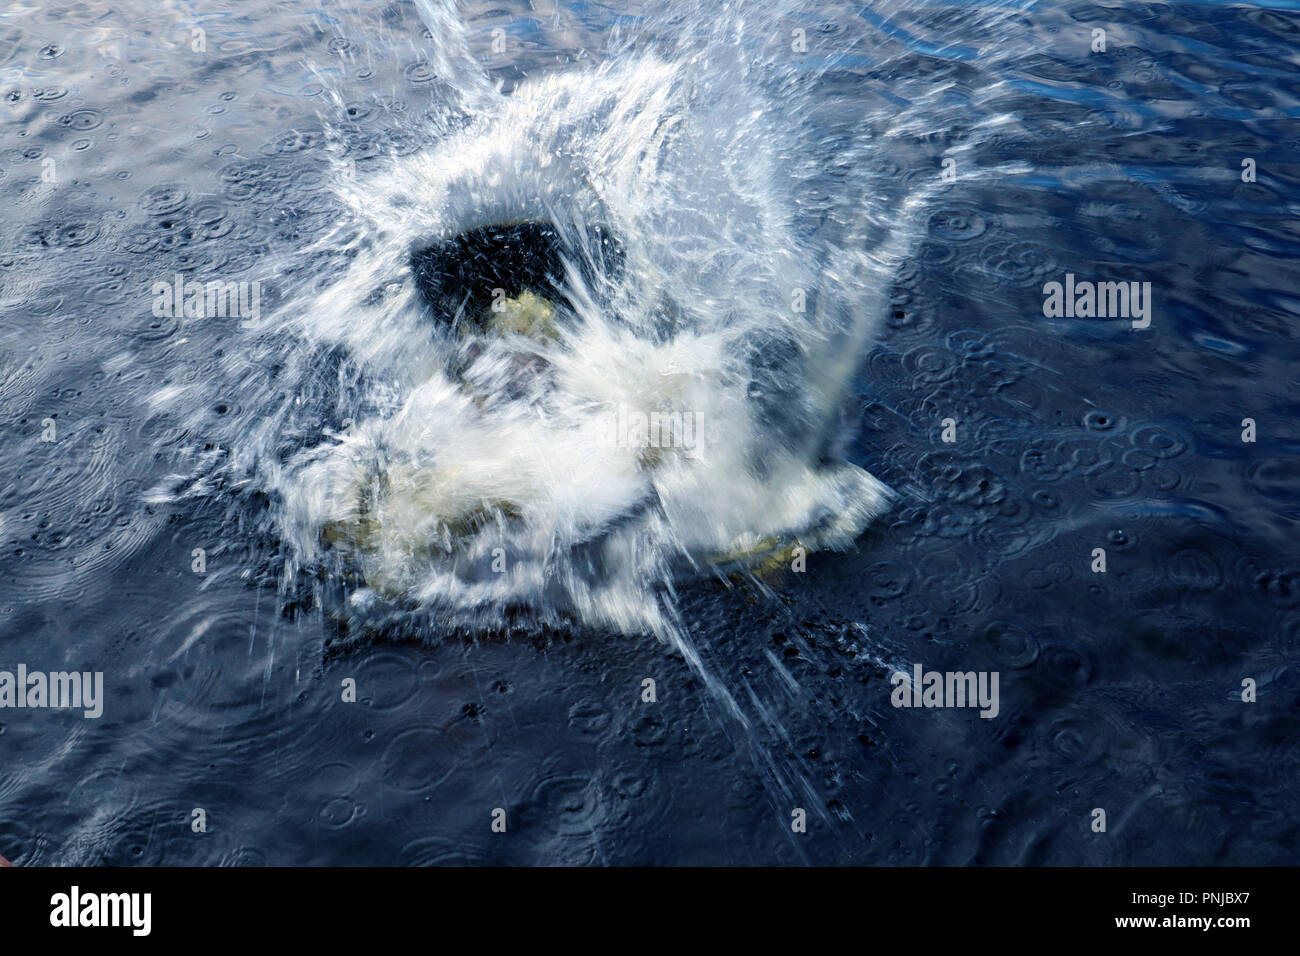 Diver entrar en el agua con gran splash y burbujas entre ondas de luz Foto de stock